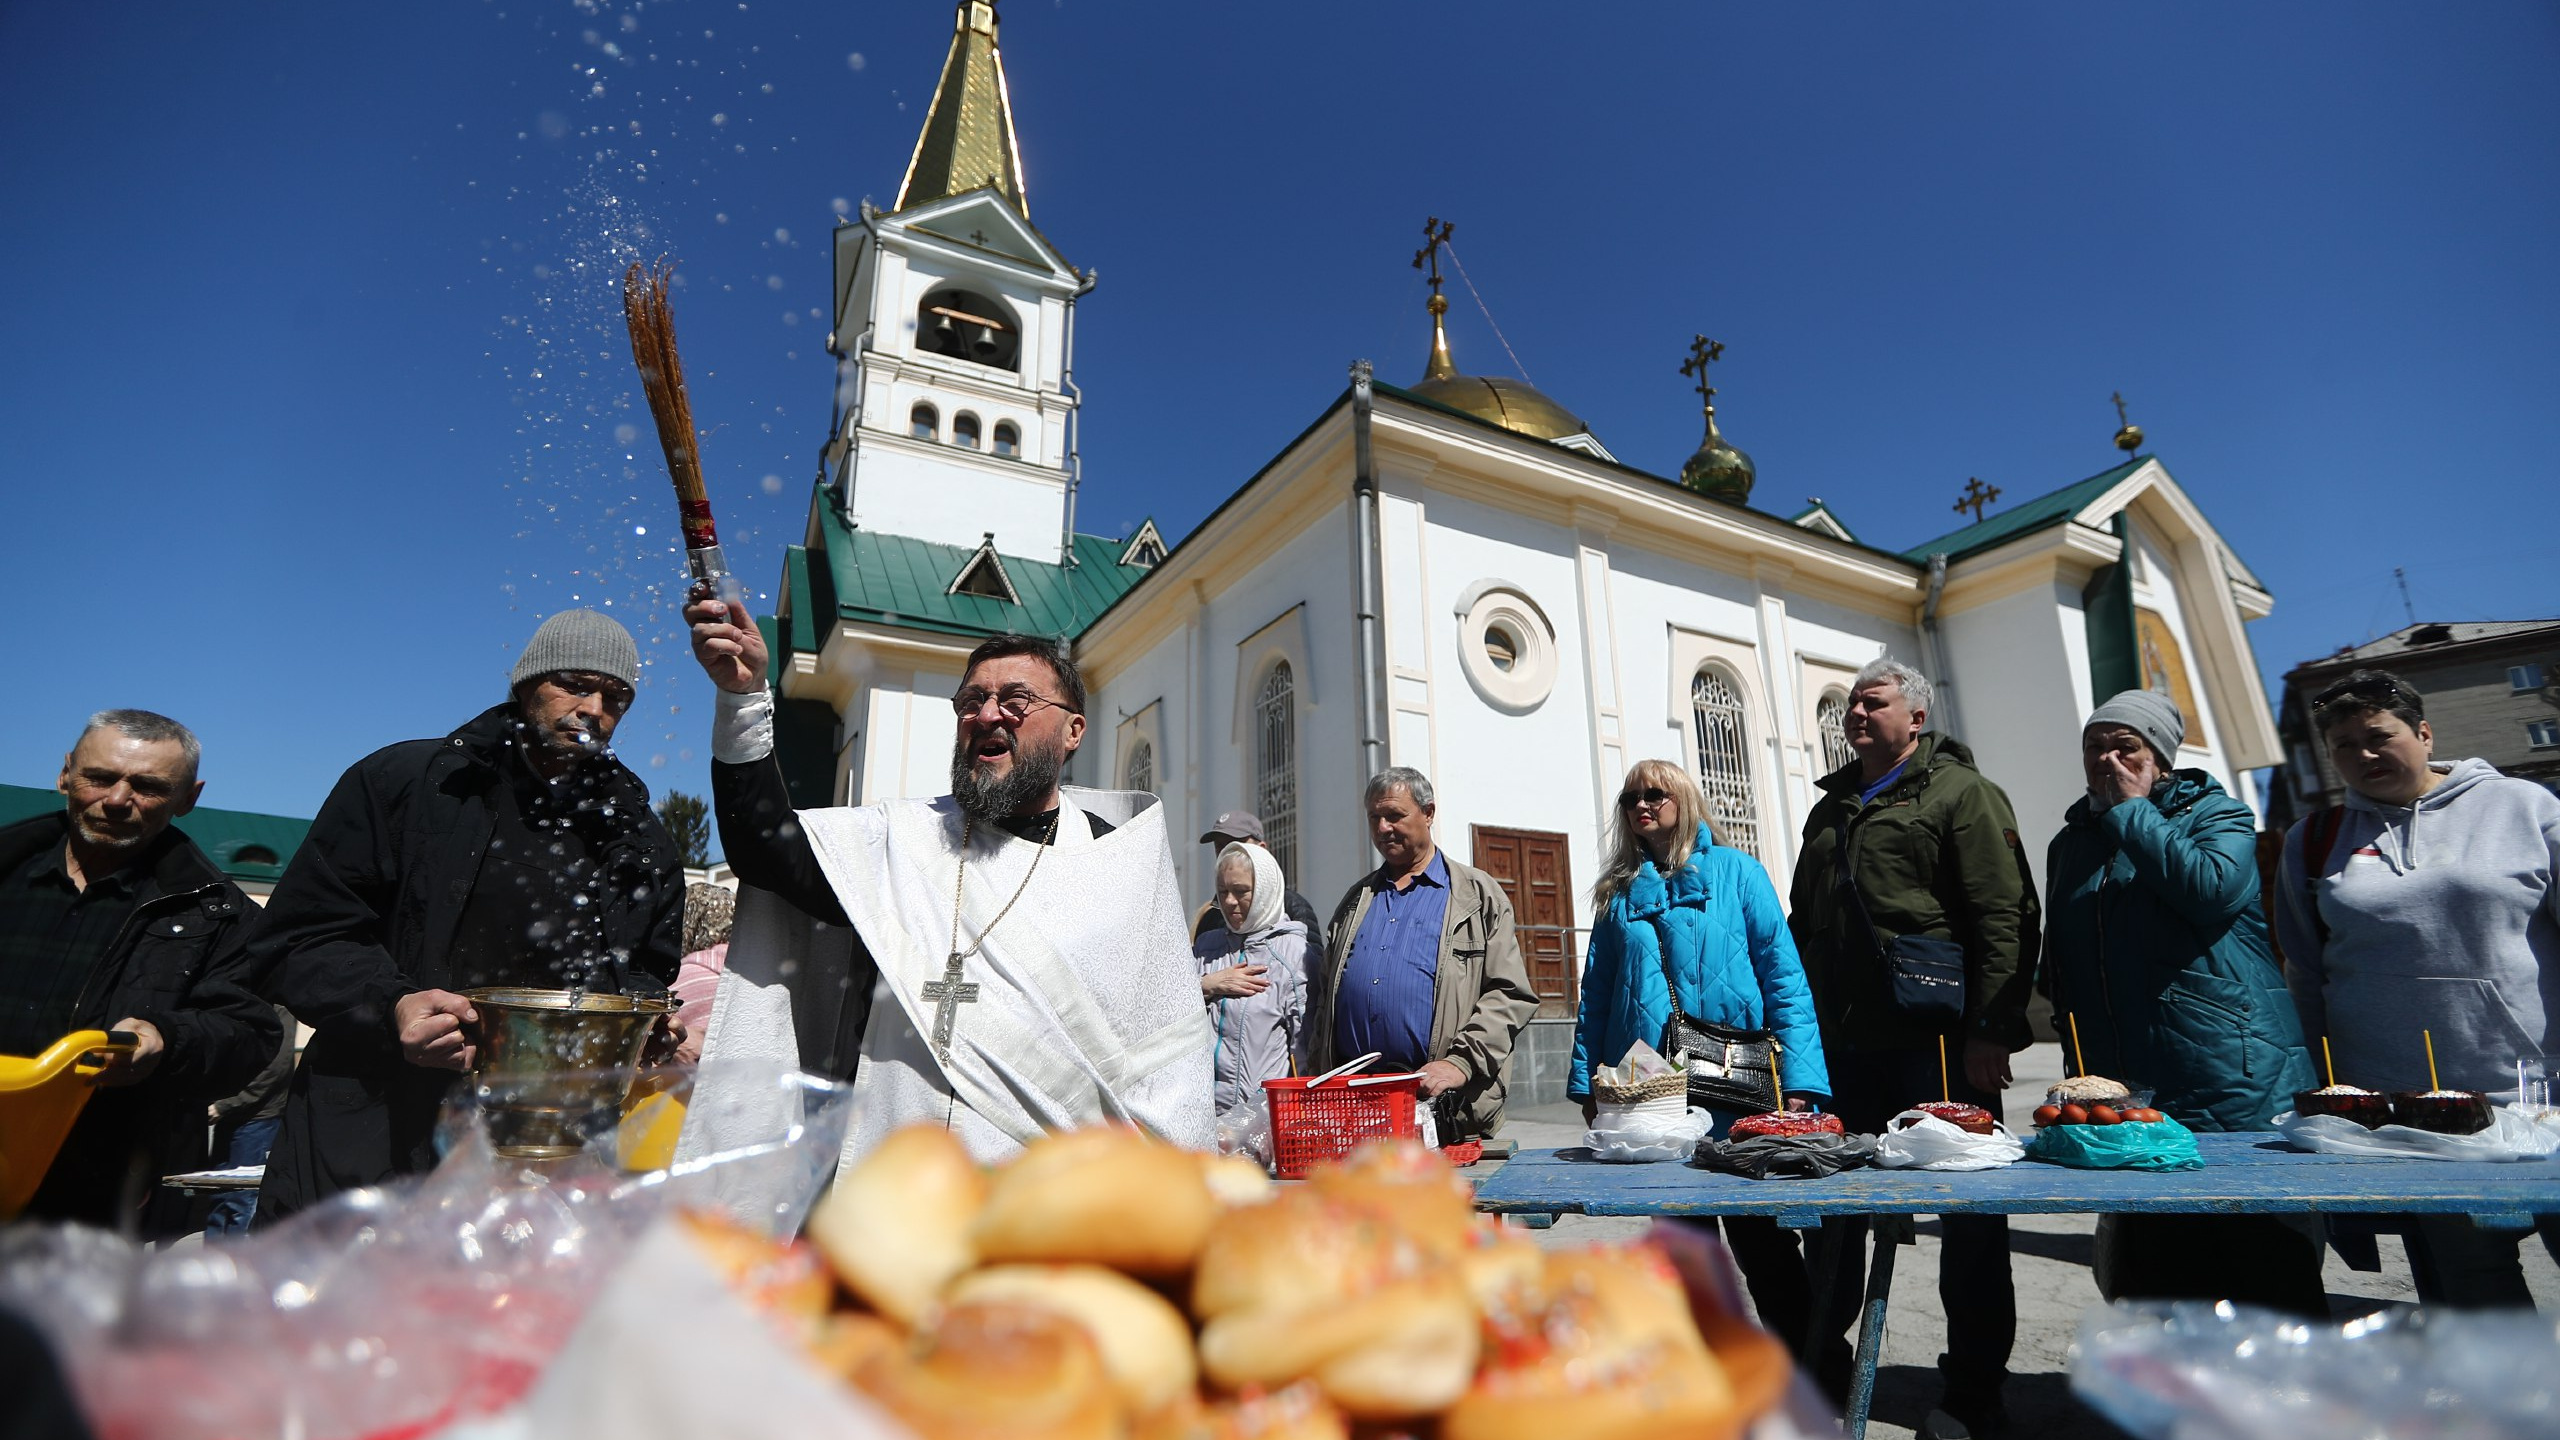 Куличи, яйца и кагор: десятки новосибирцев собрались у церкви перед Пасхой — 7 праздничных фото